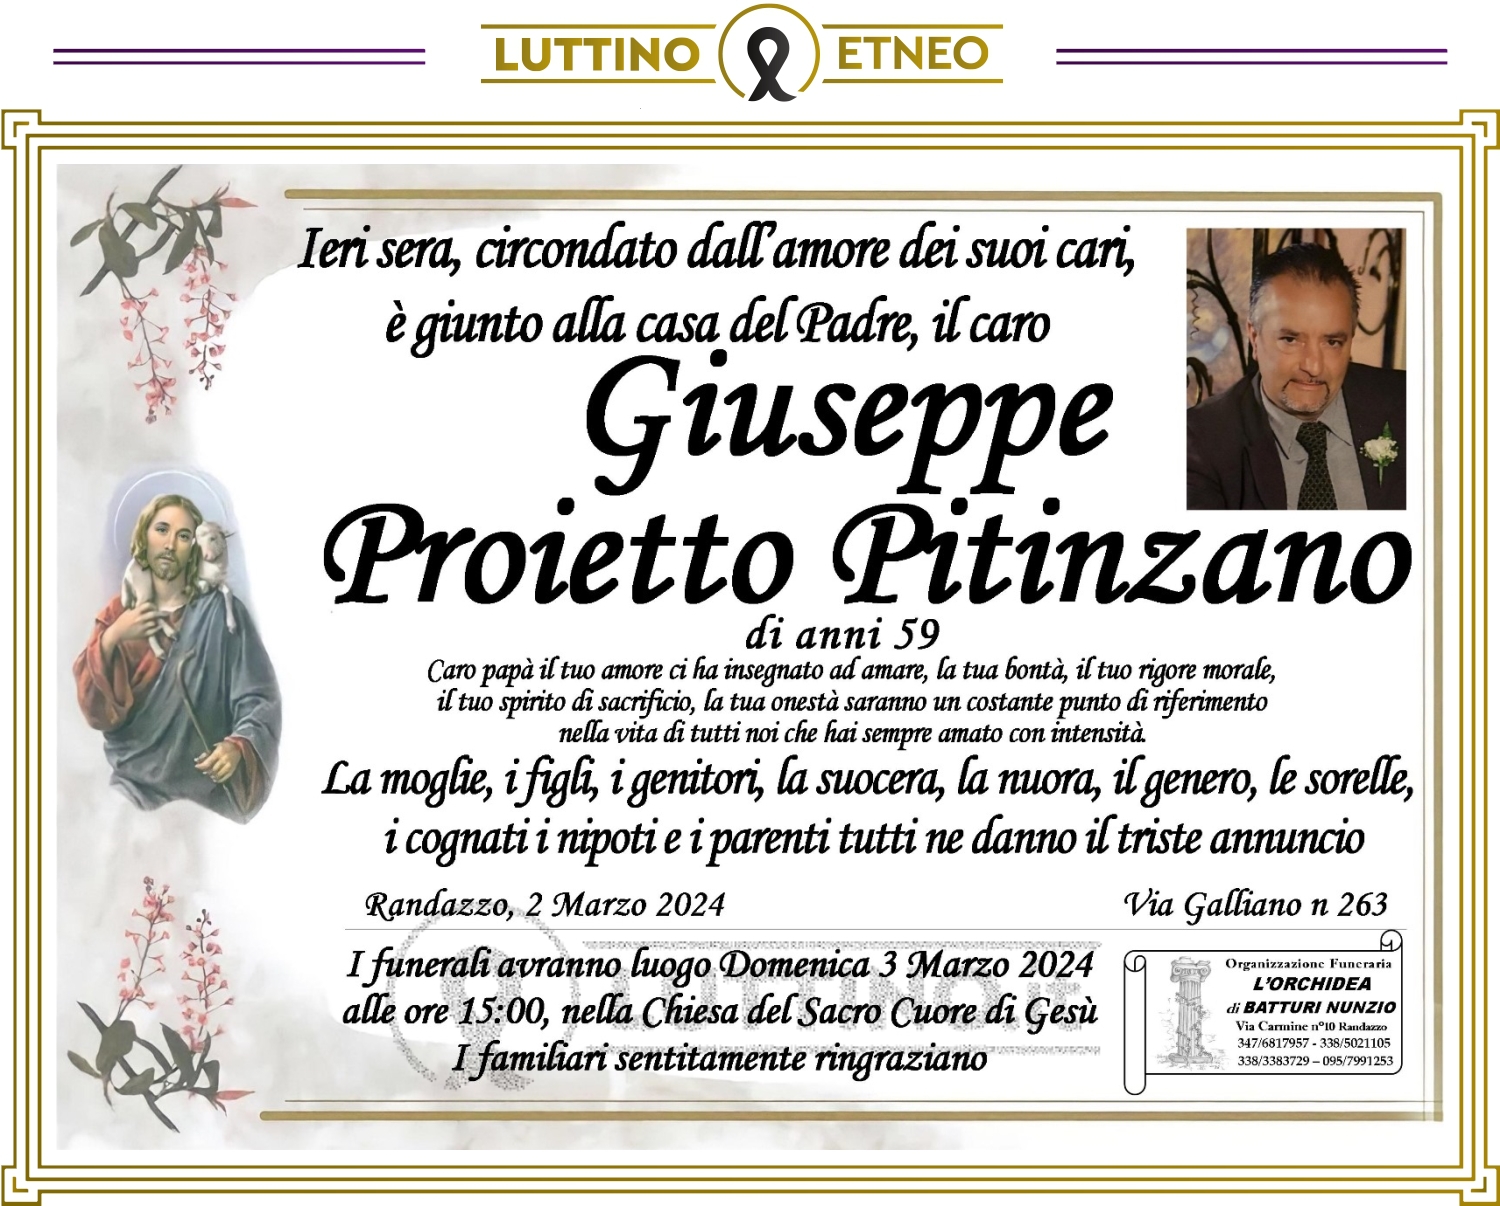 Giuseppe Proietto Pitinzano